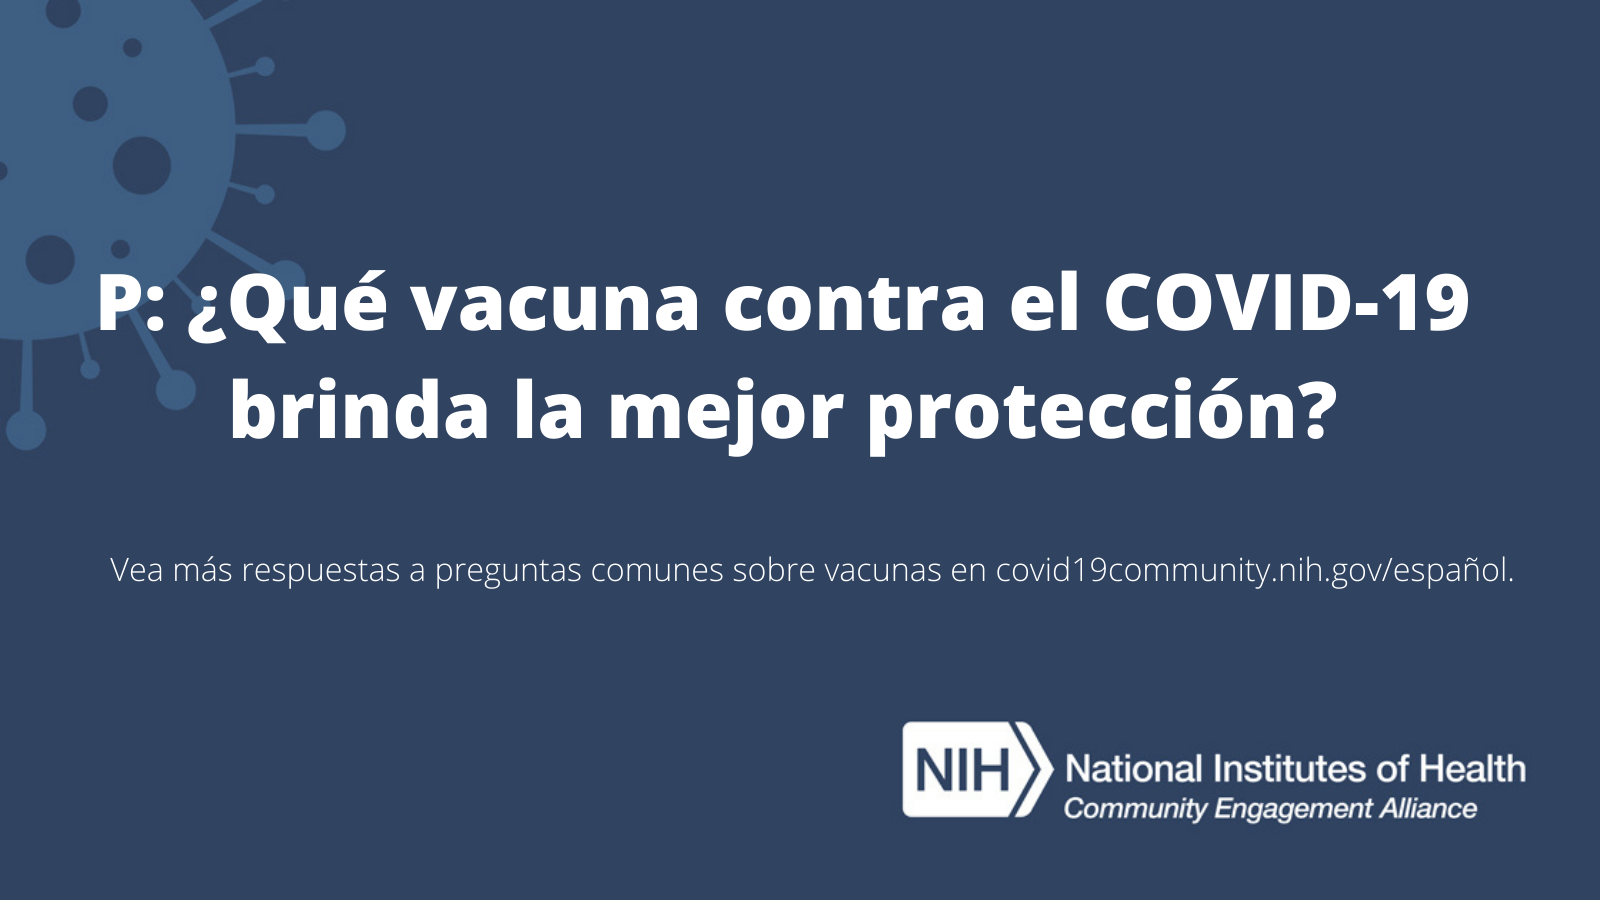 P: ¿Qué vacuna contra el COVID-19 brinda la mejor protección?